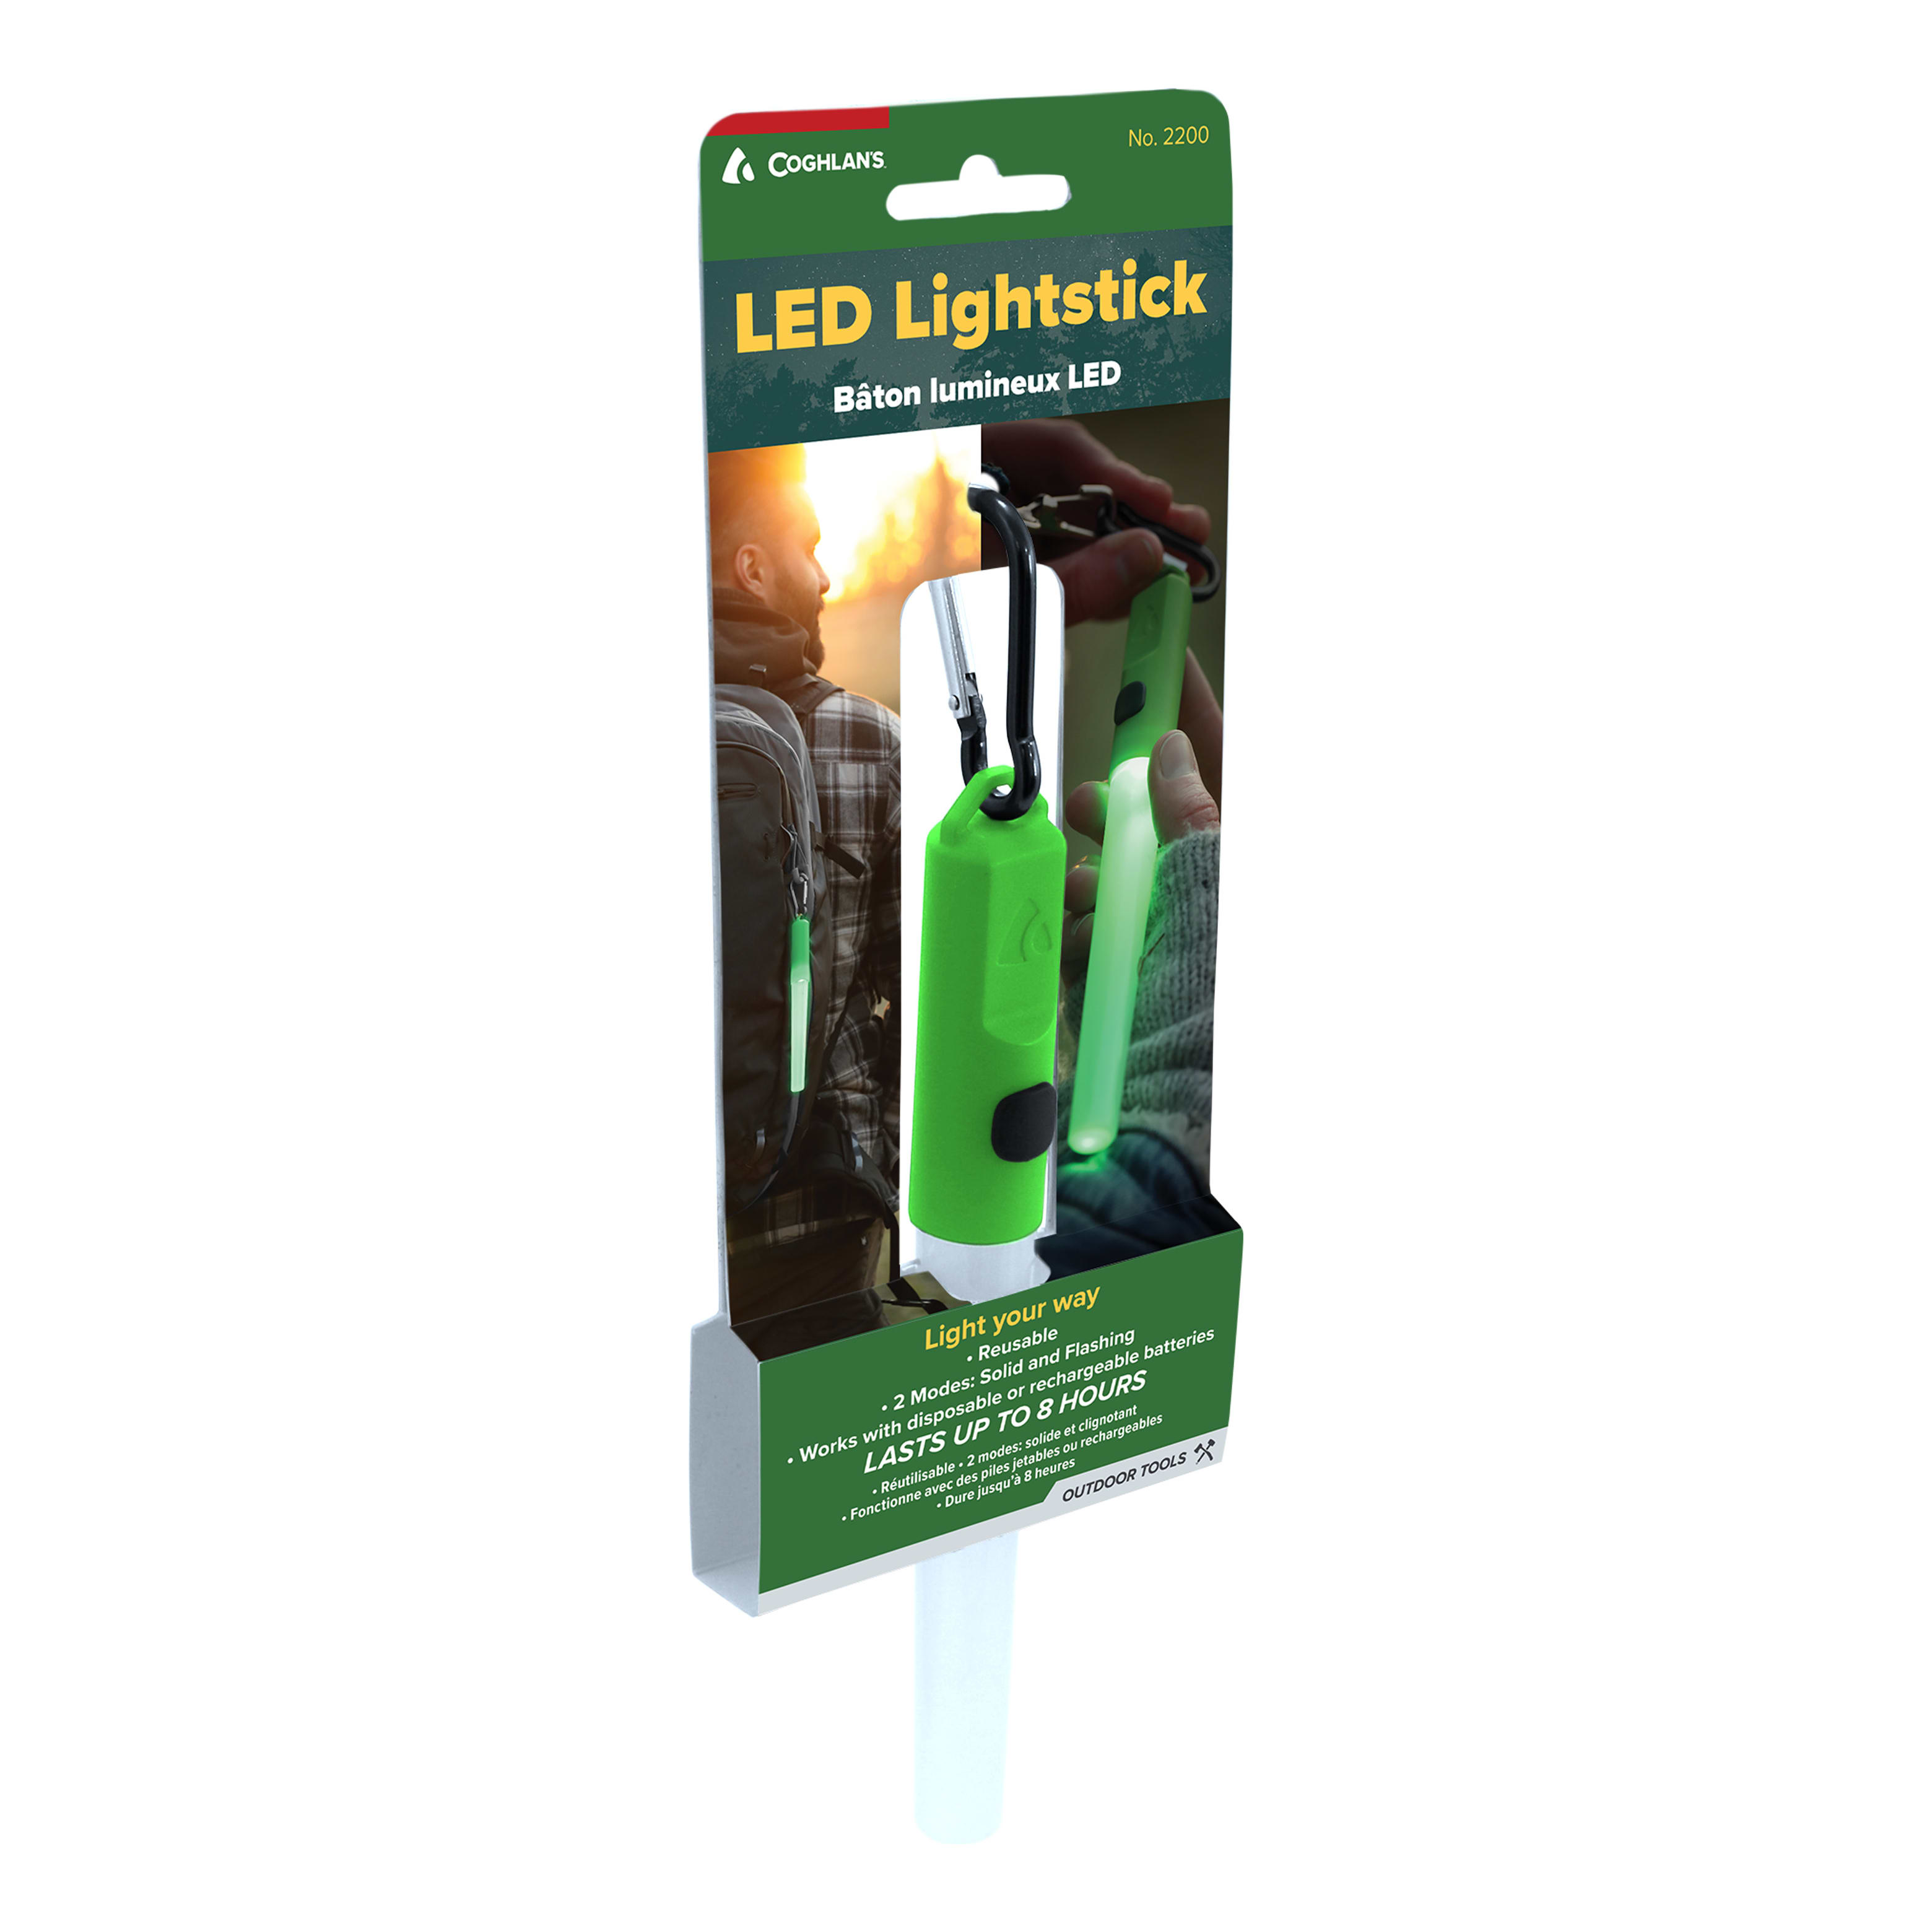 Coghlan's® LED Lightstick